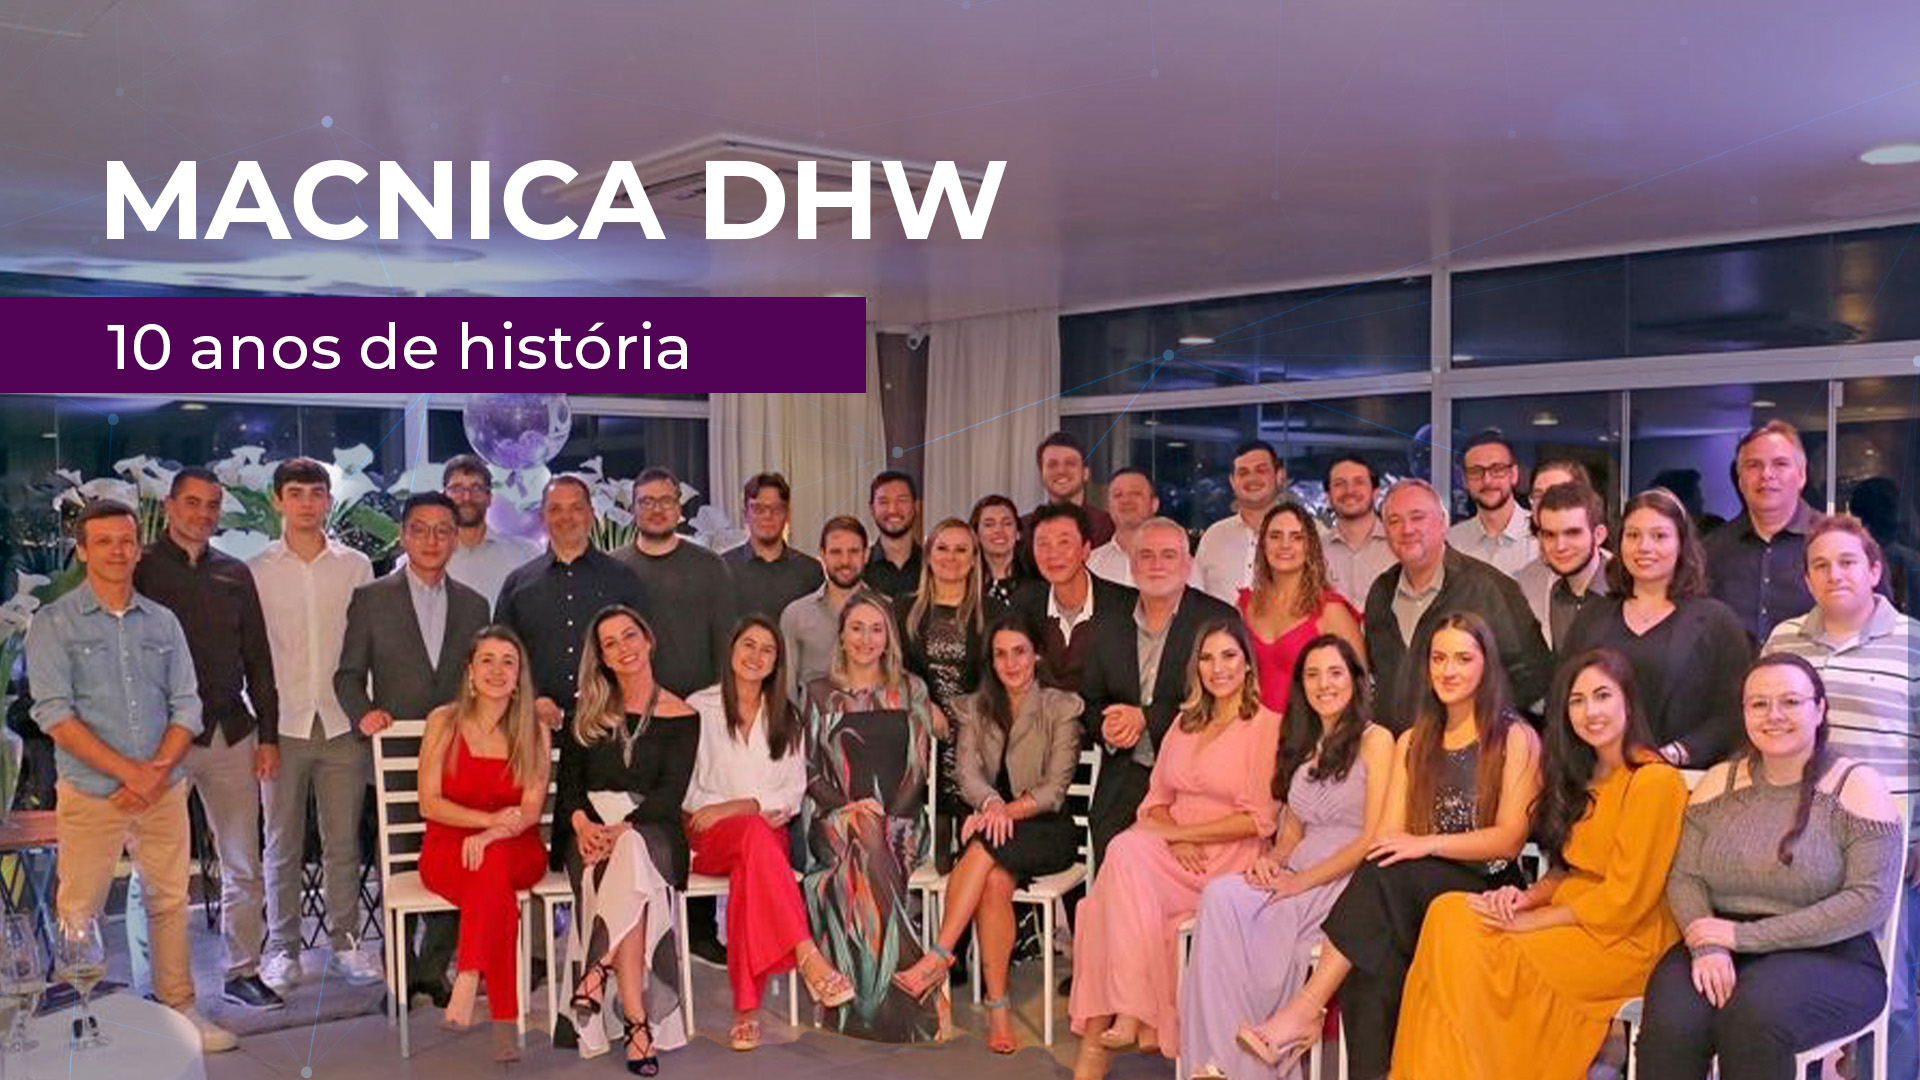 05 de Novembro – Macnica DHW completa 10 anos de história